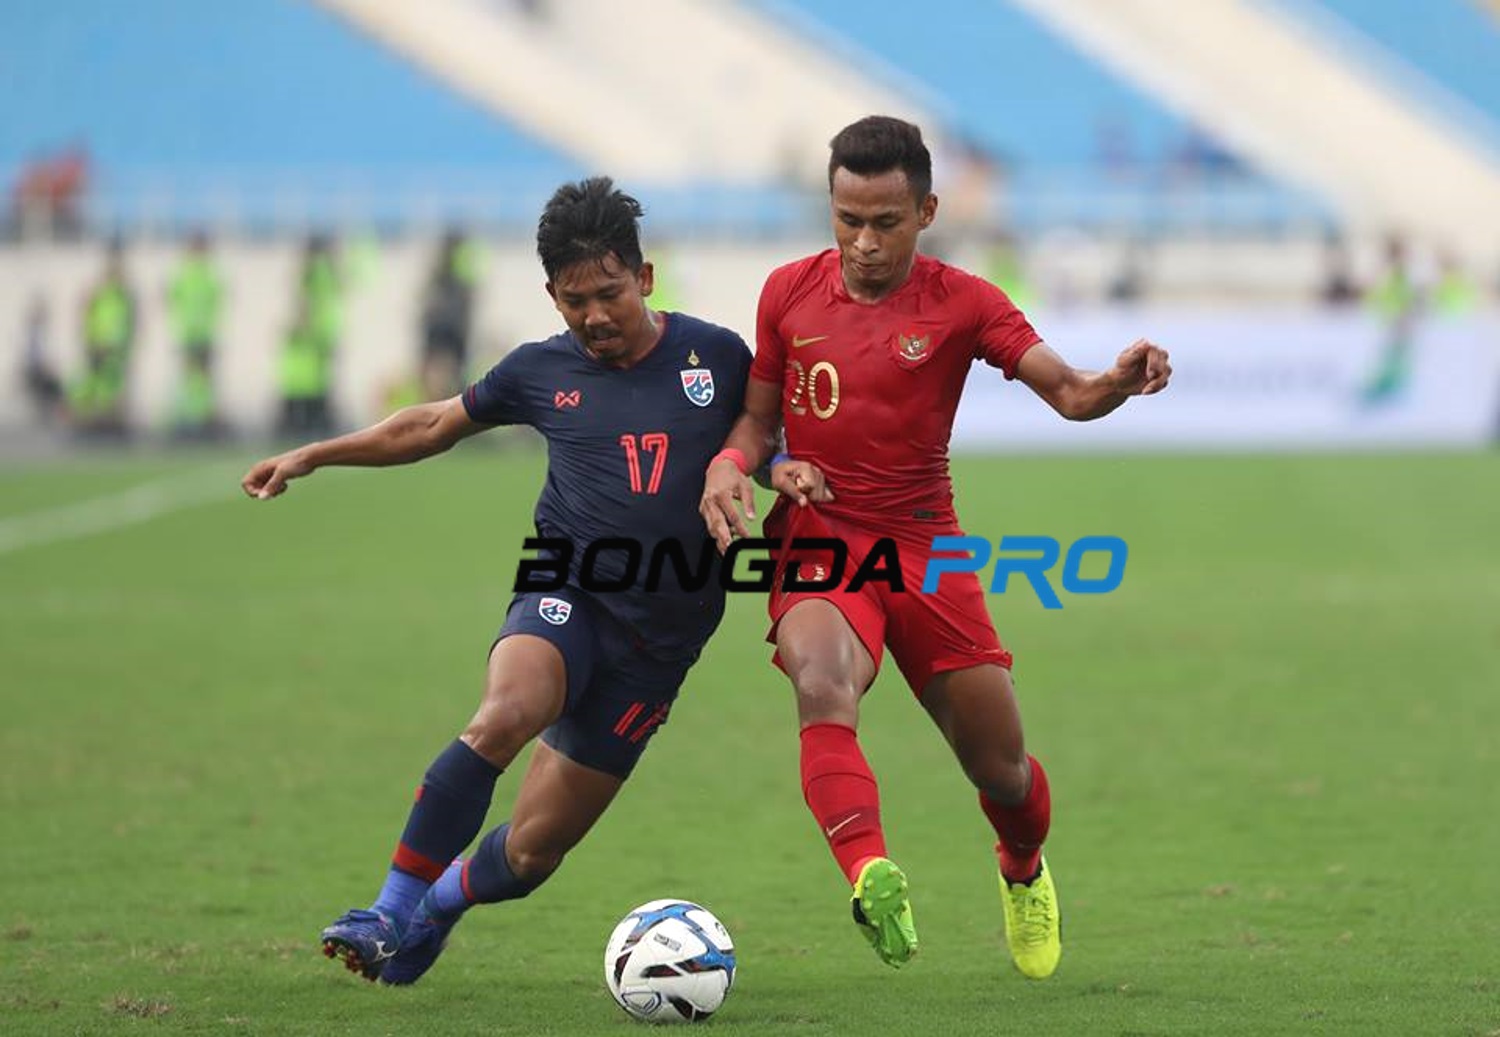 Kết quả U23 Thái Lan vs U23 Indonesia (FT 4-0): Supachai lập cú đúp, Indonesia hiện 'nguyên hình'